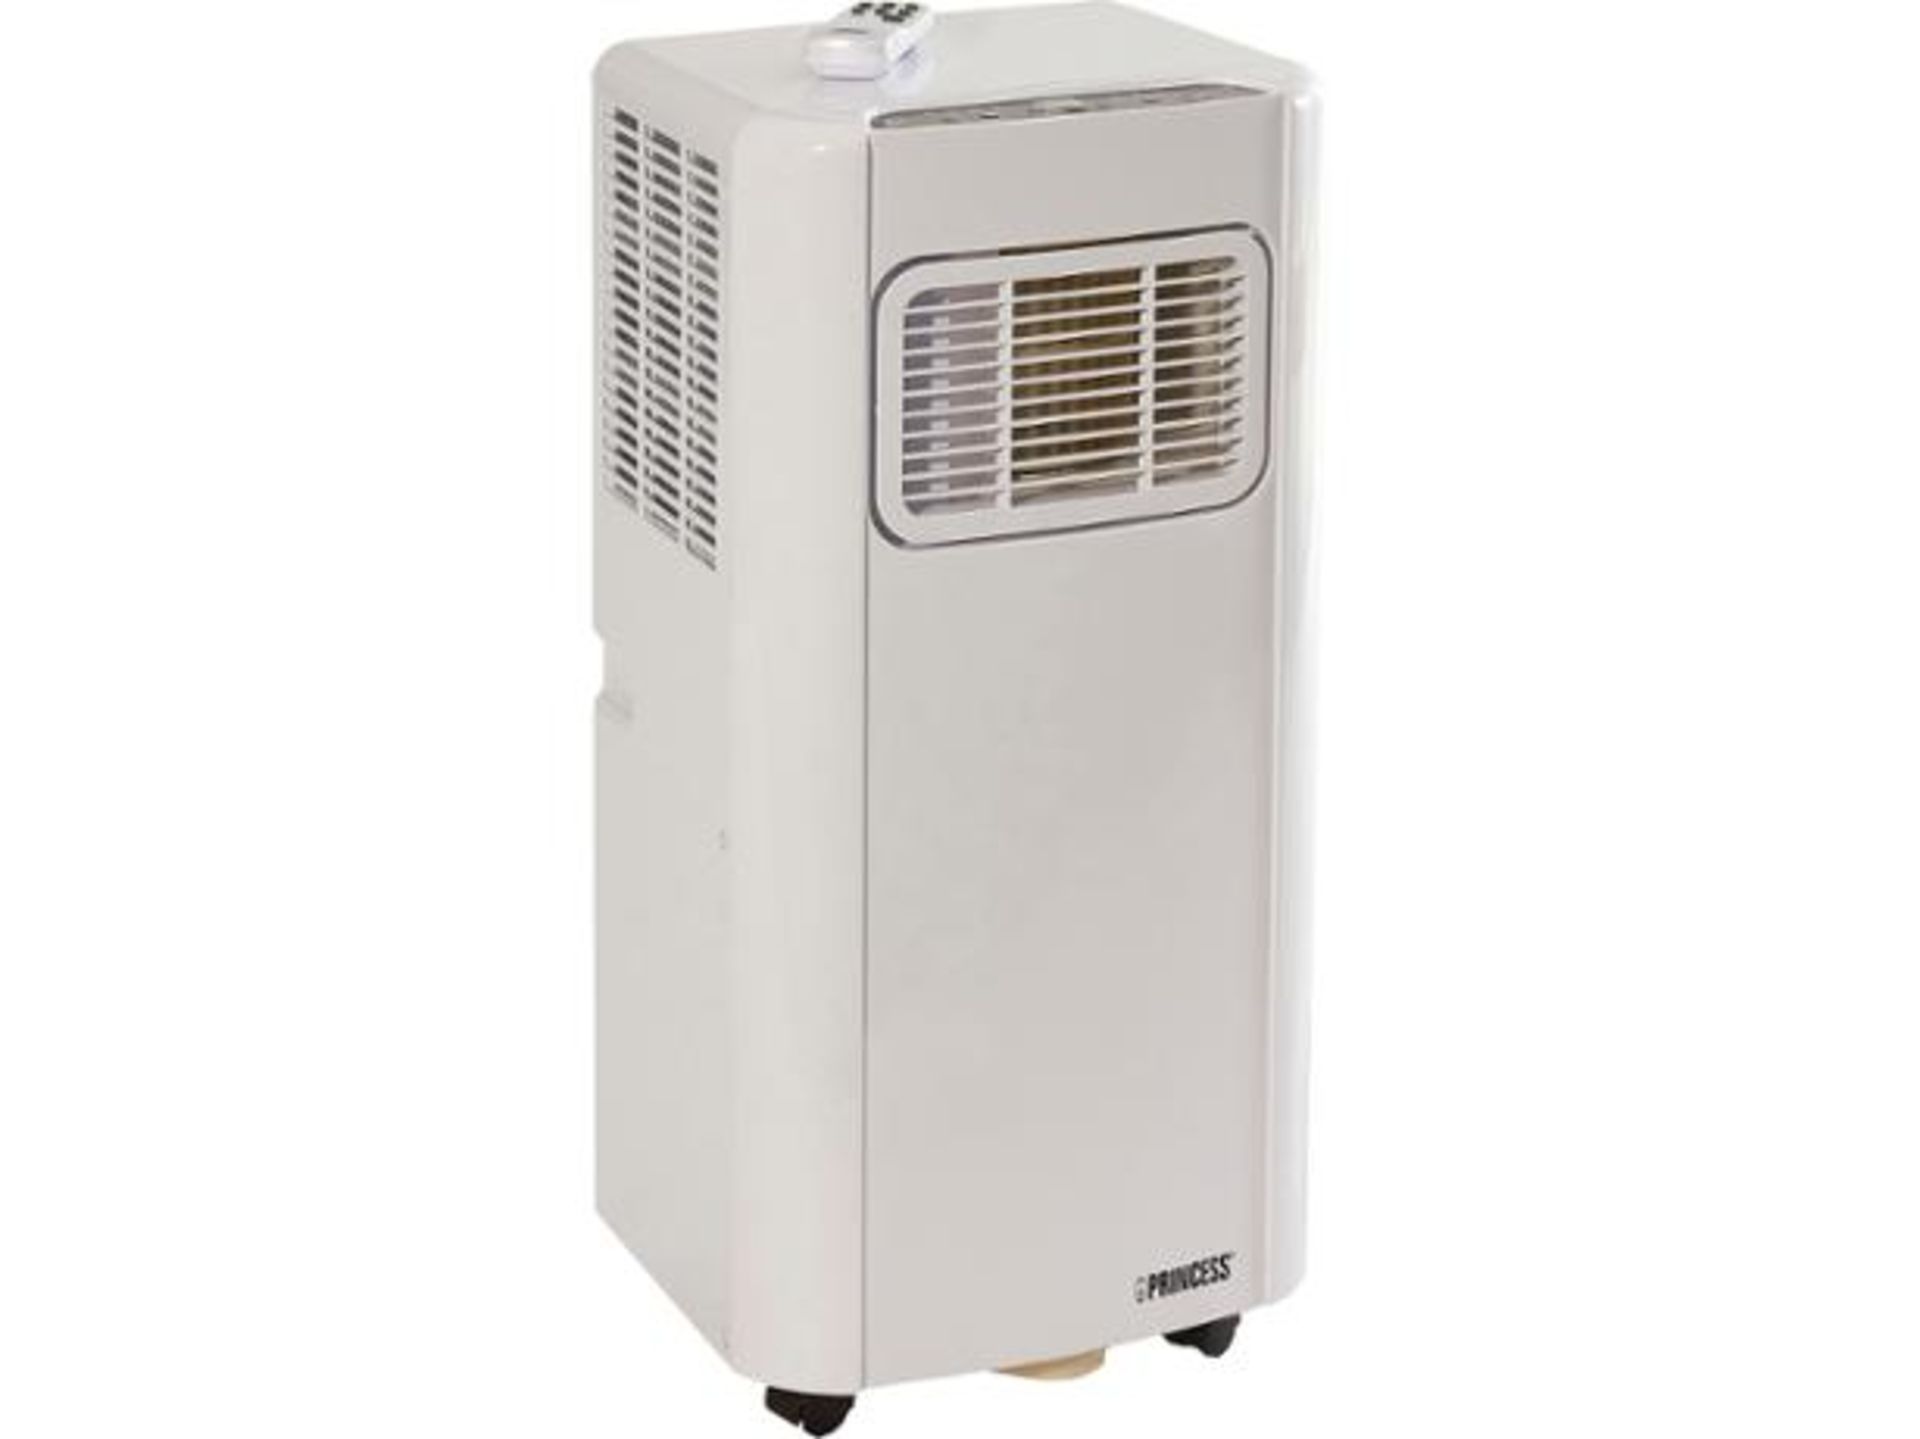 2 x PRINCESS WHITE AIR CONDITIONER 9000 BTU. RRP £399.99 EACH. 1000 Watt mobile air conditioner